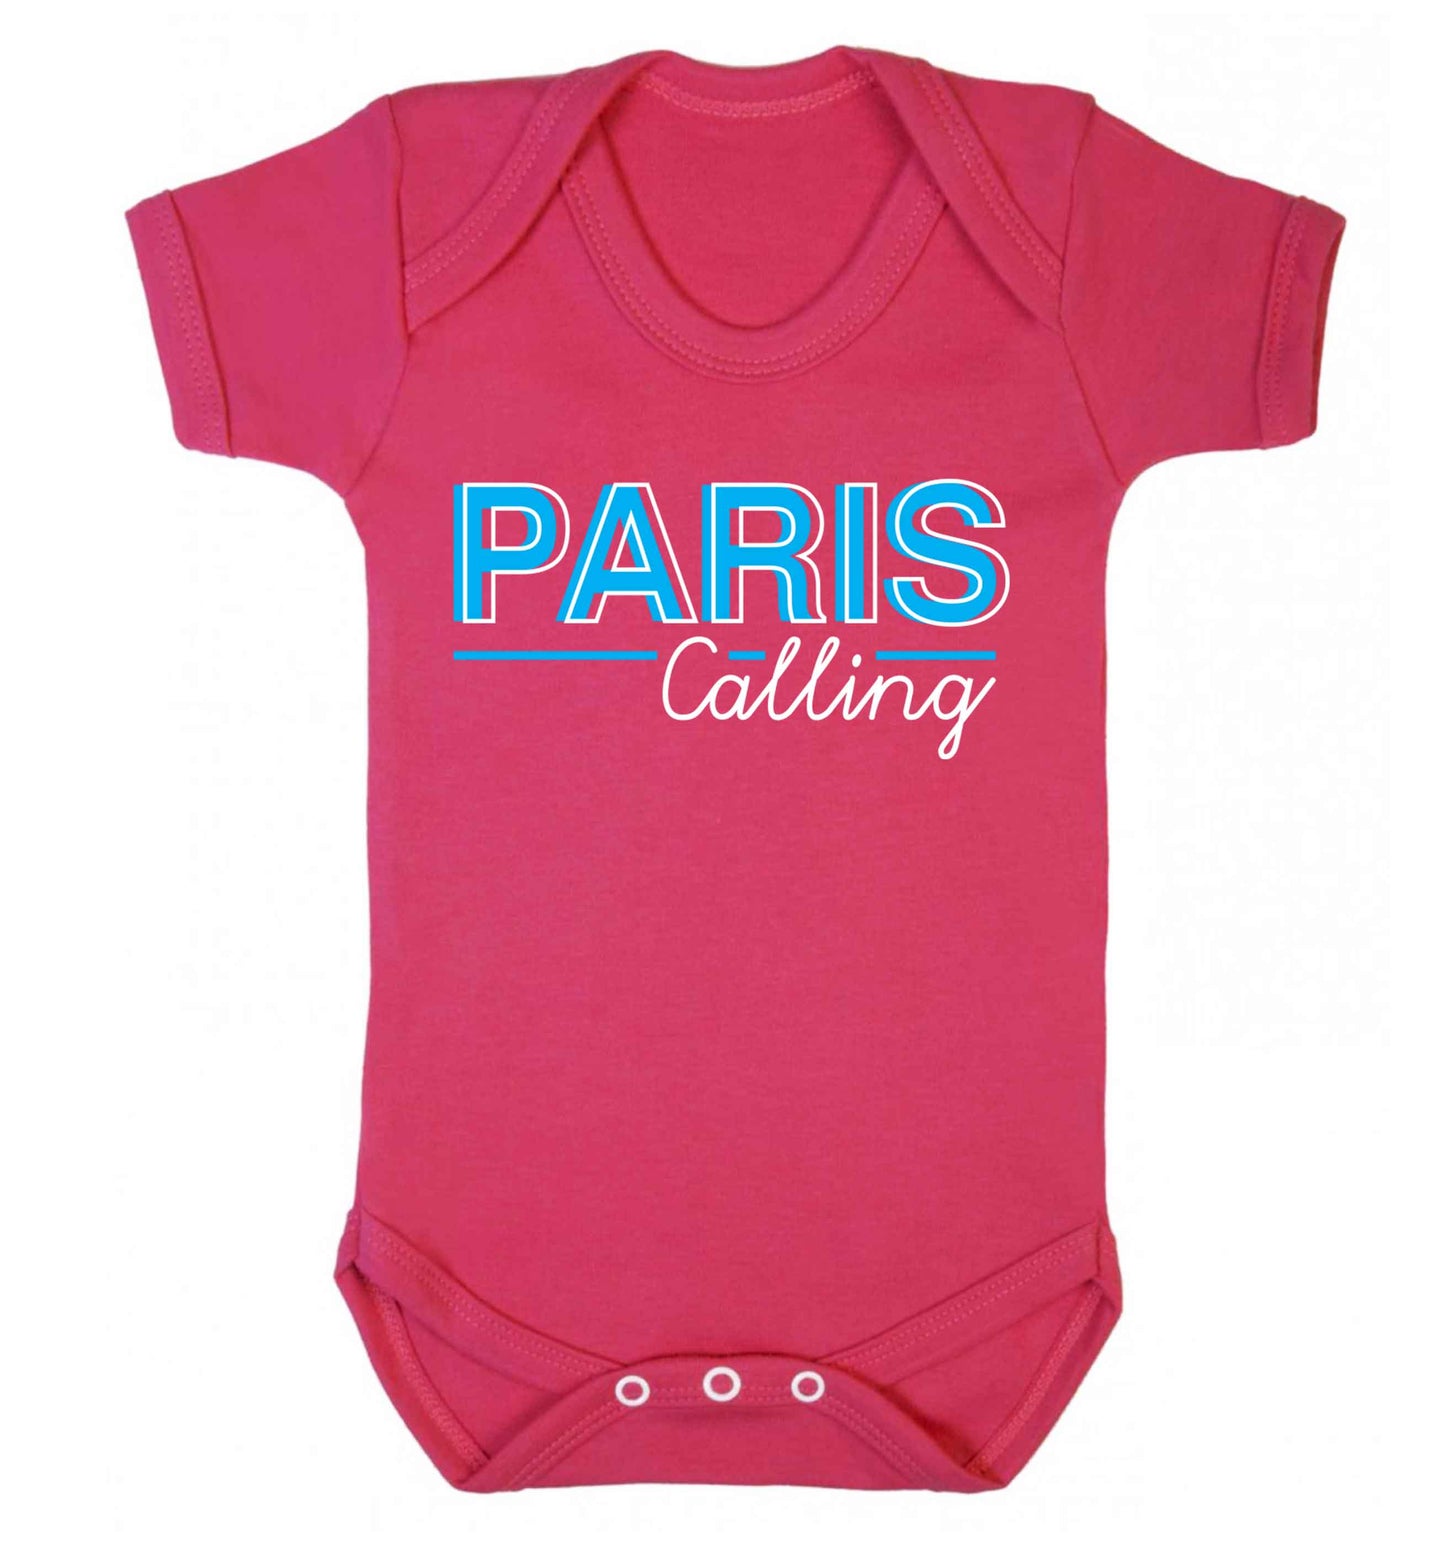 Paris calling Baby Vest dark pink 18-24 months